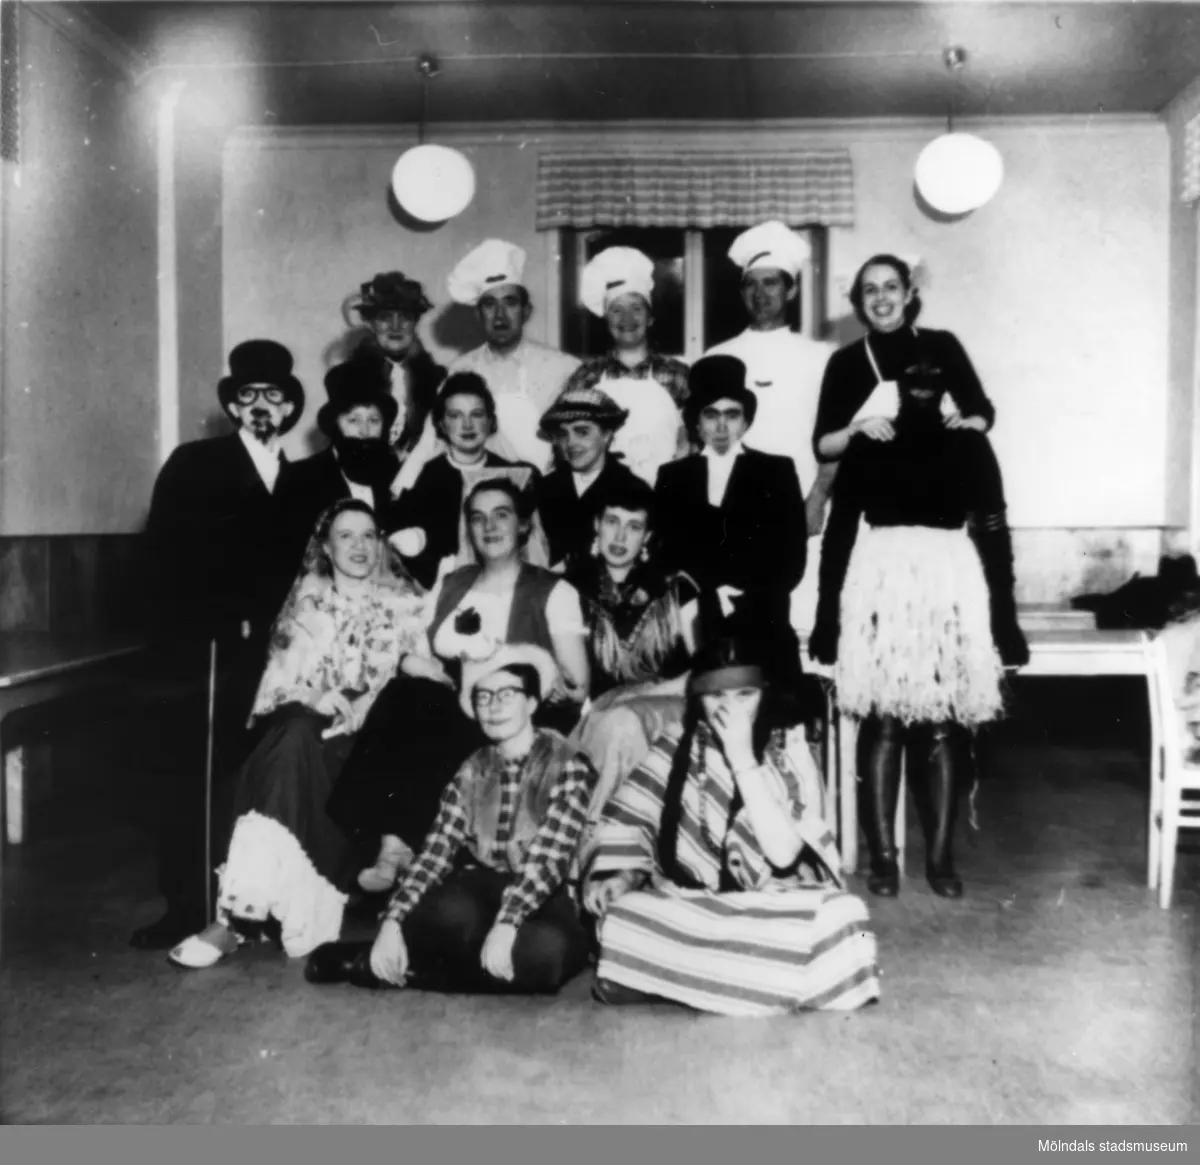 Personalfest på Streteredshemmet i Kållered, år 1955. Övre raden: Lilly Franzén, Folke Ahl, okänd, Nils Malmqvist. I rutig blus: Gulli Ferlin.